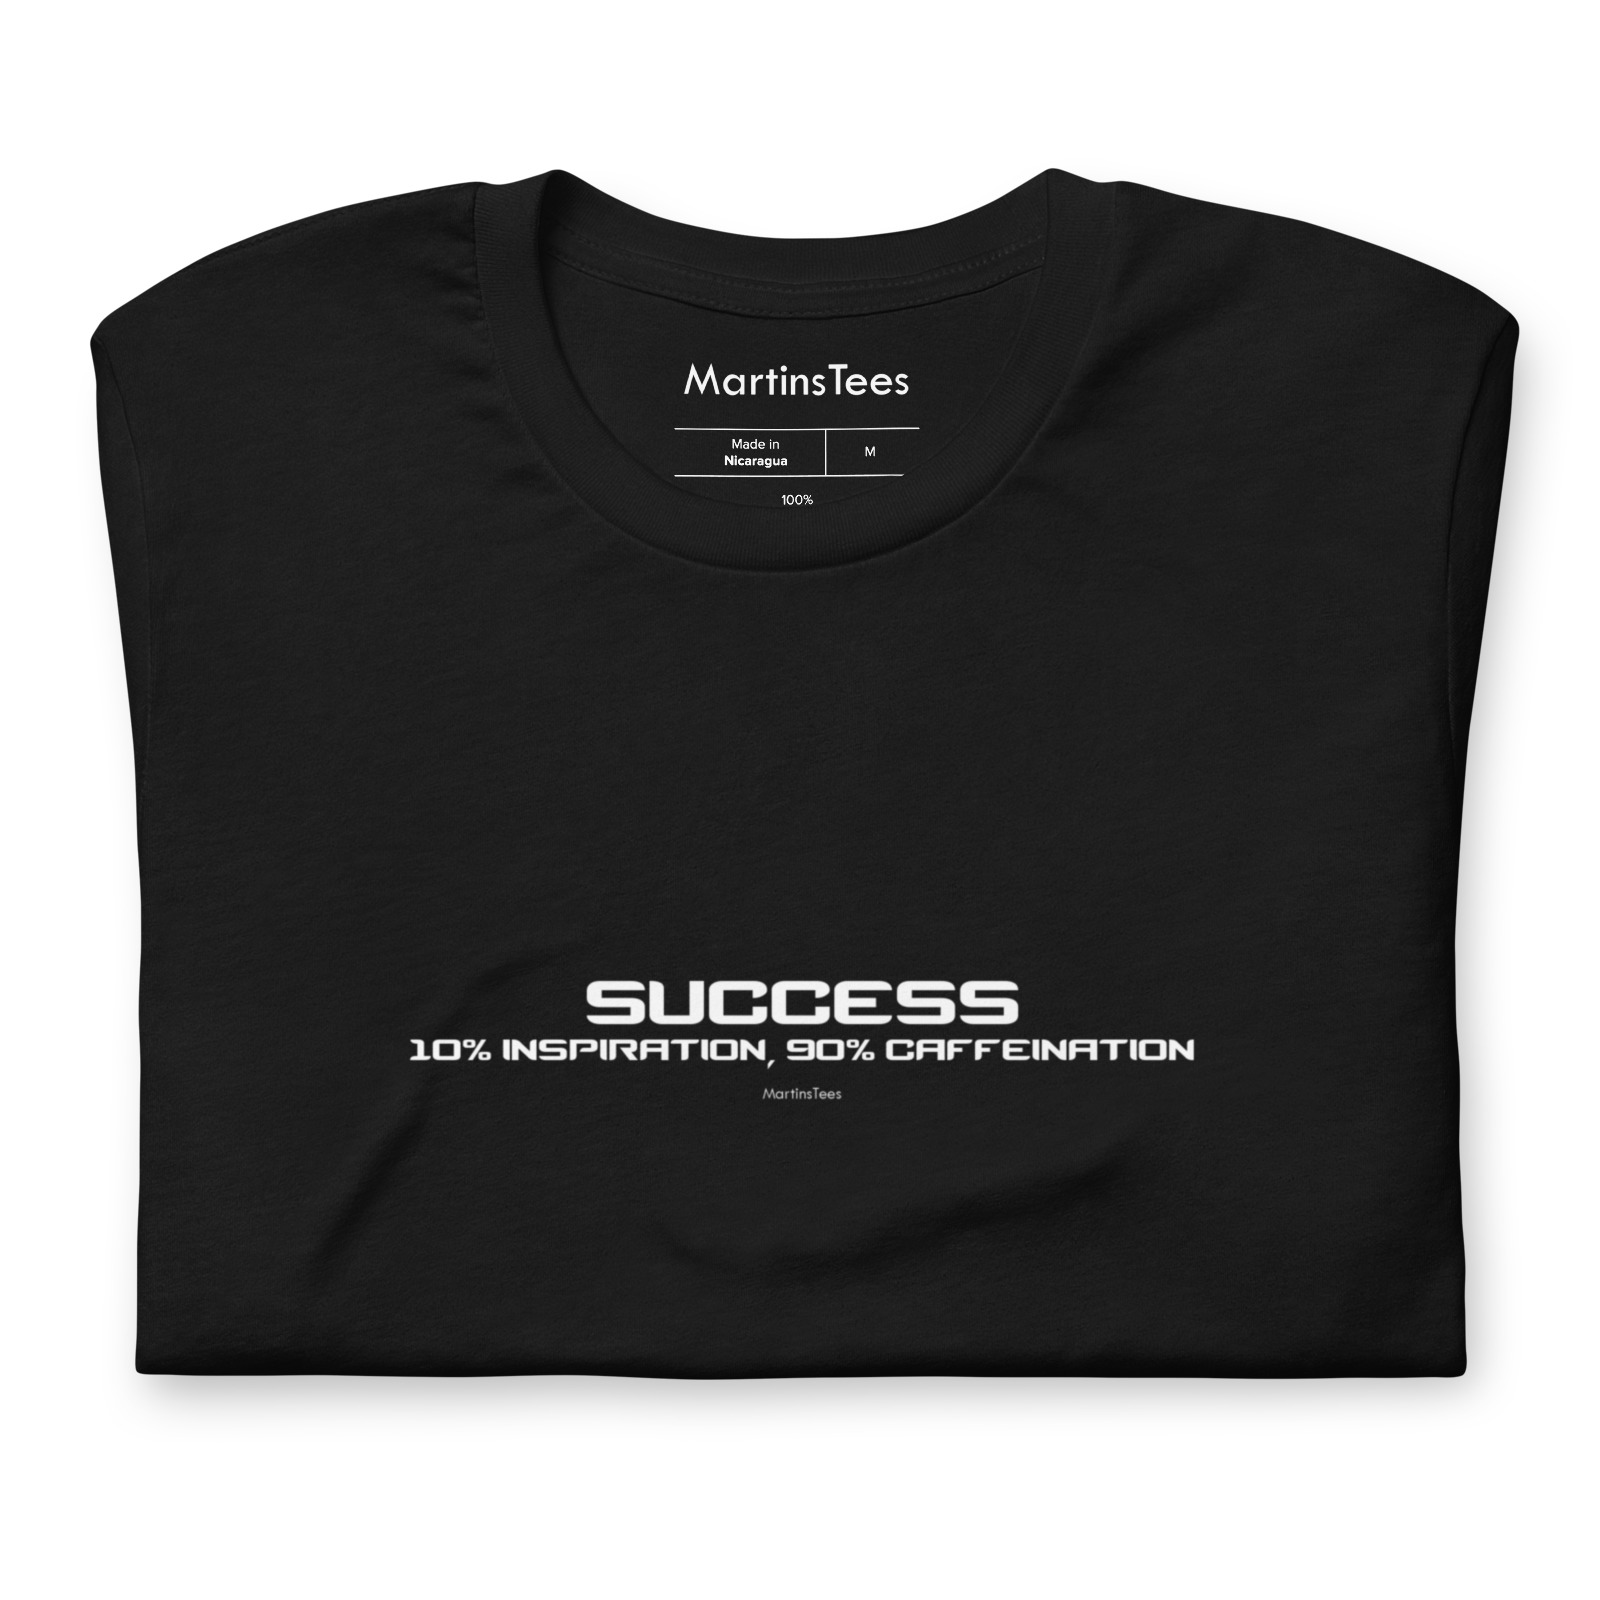 T-shirt: SUCCESS - 10% INSPIRATION, 90% CAFFEINATION